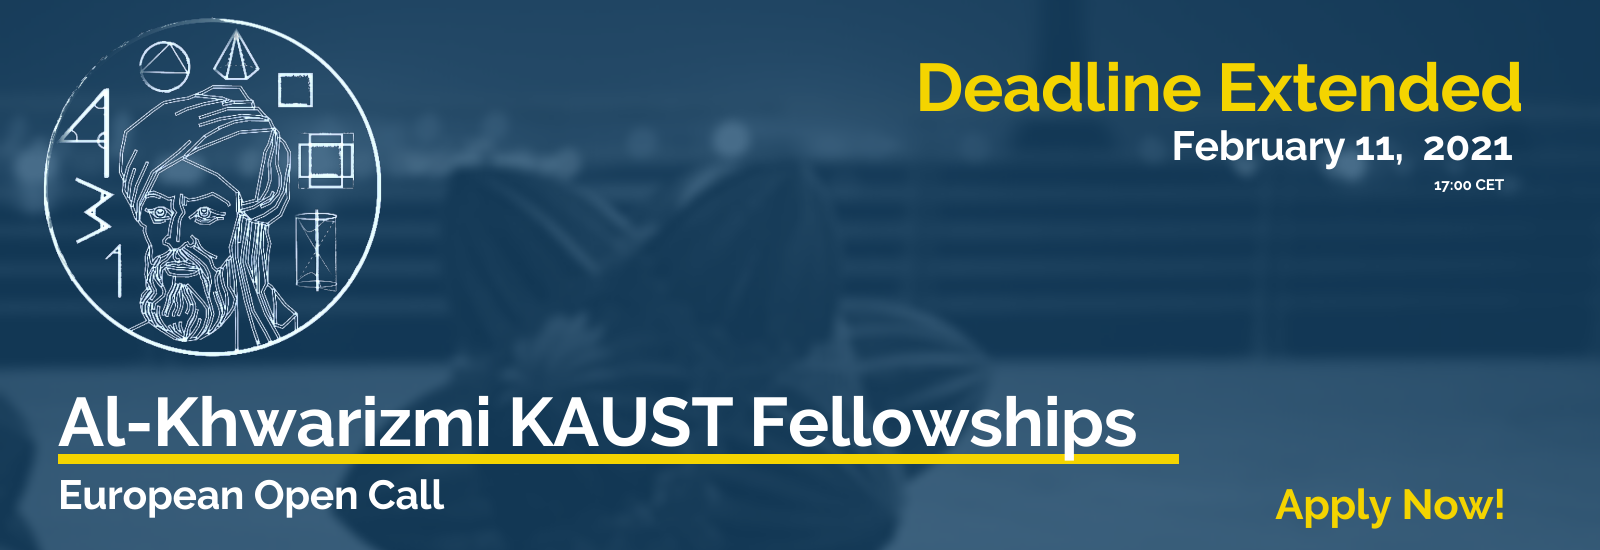 Al-Khwarizmi KAUST Fellowship